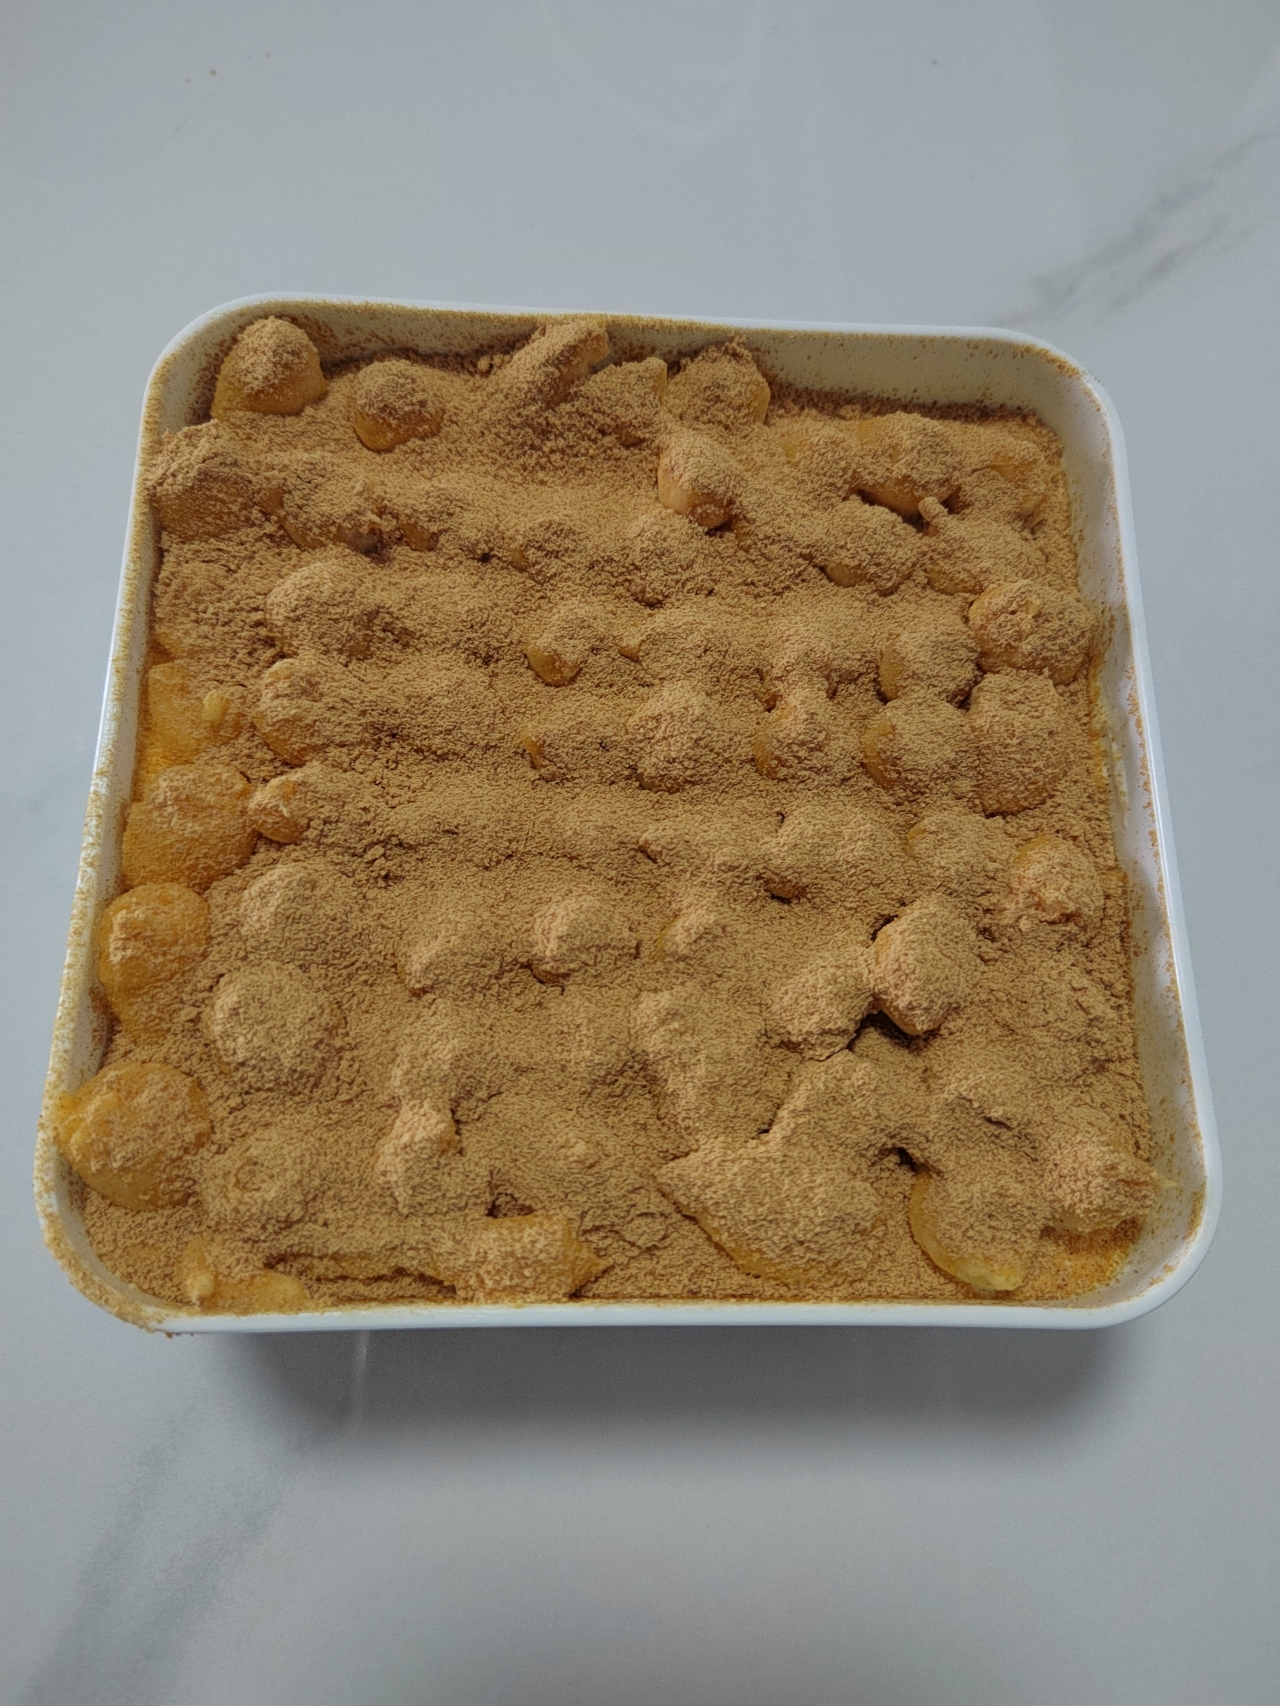 豆香浓郁甜而不腻❗️自制网红豆乳盒子蛋糕